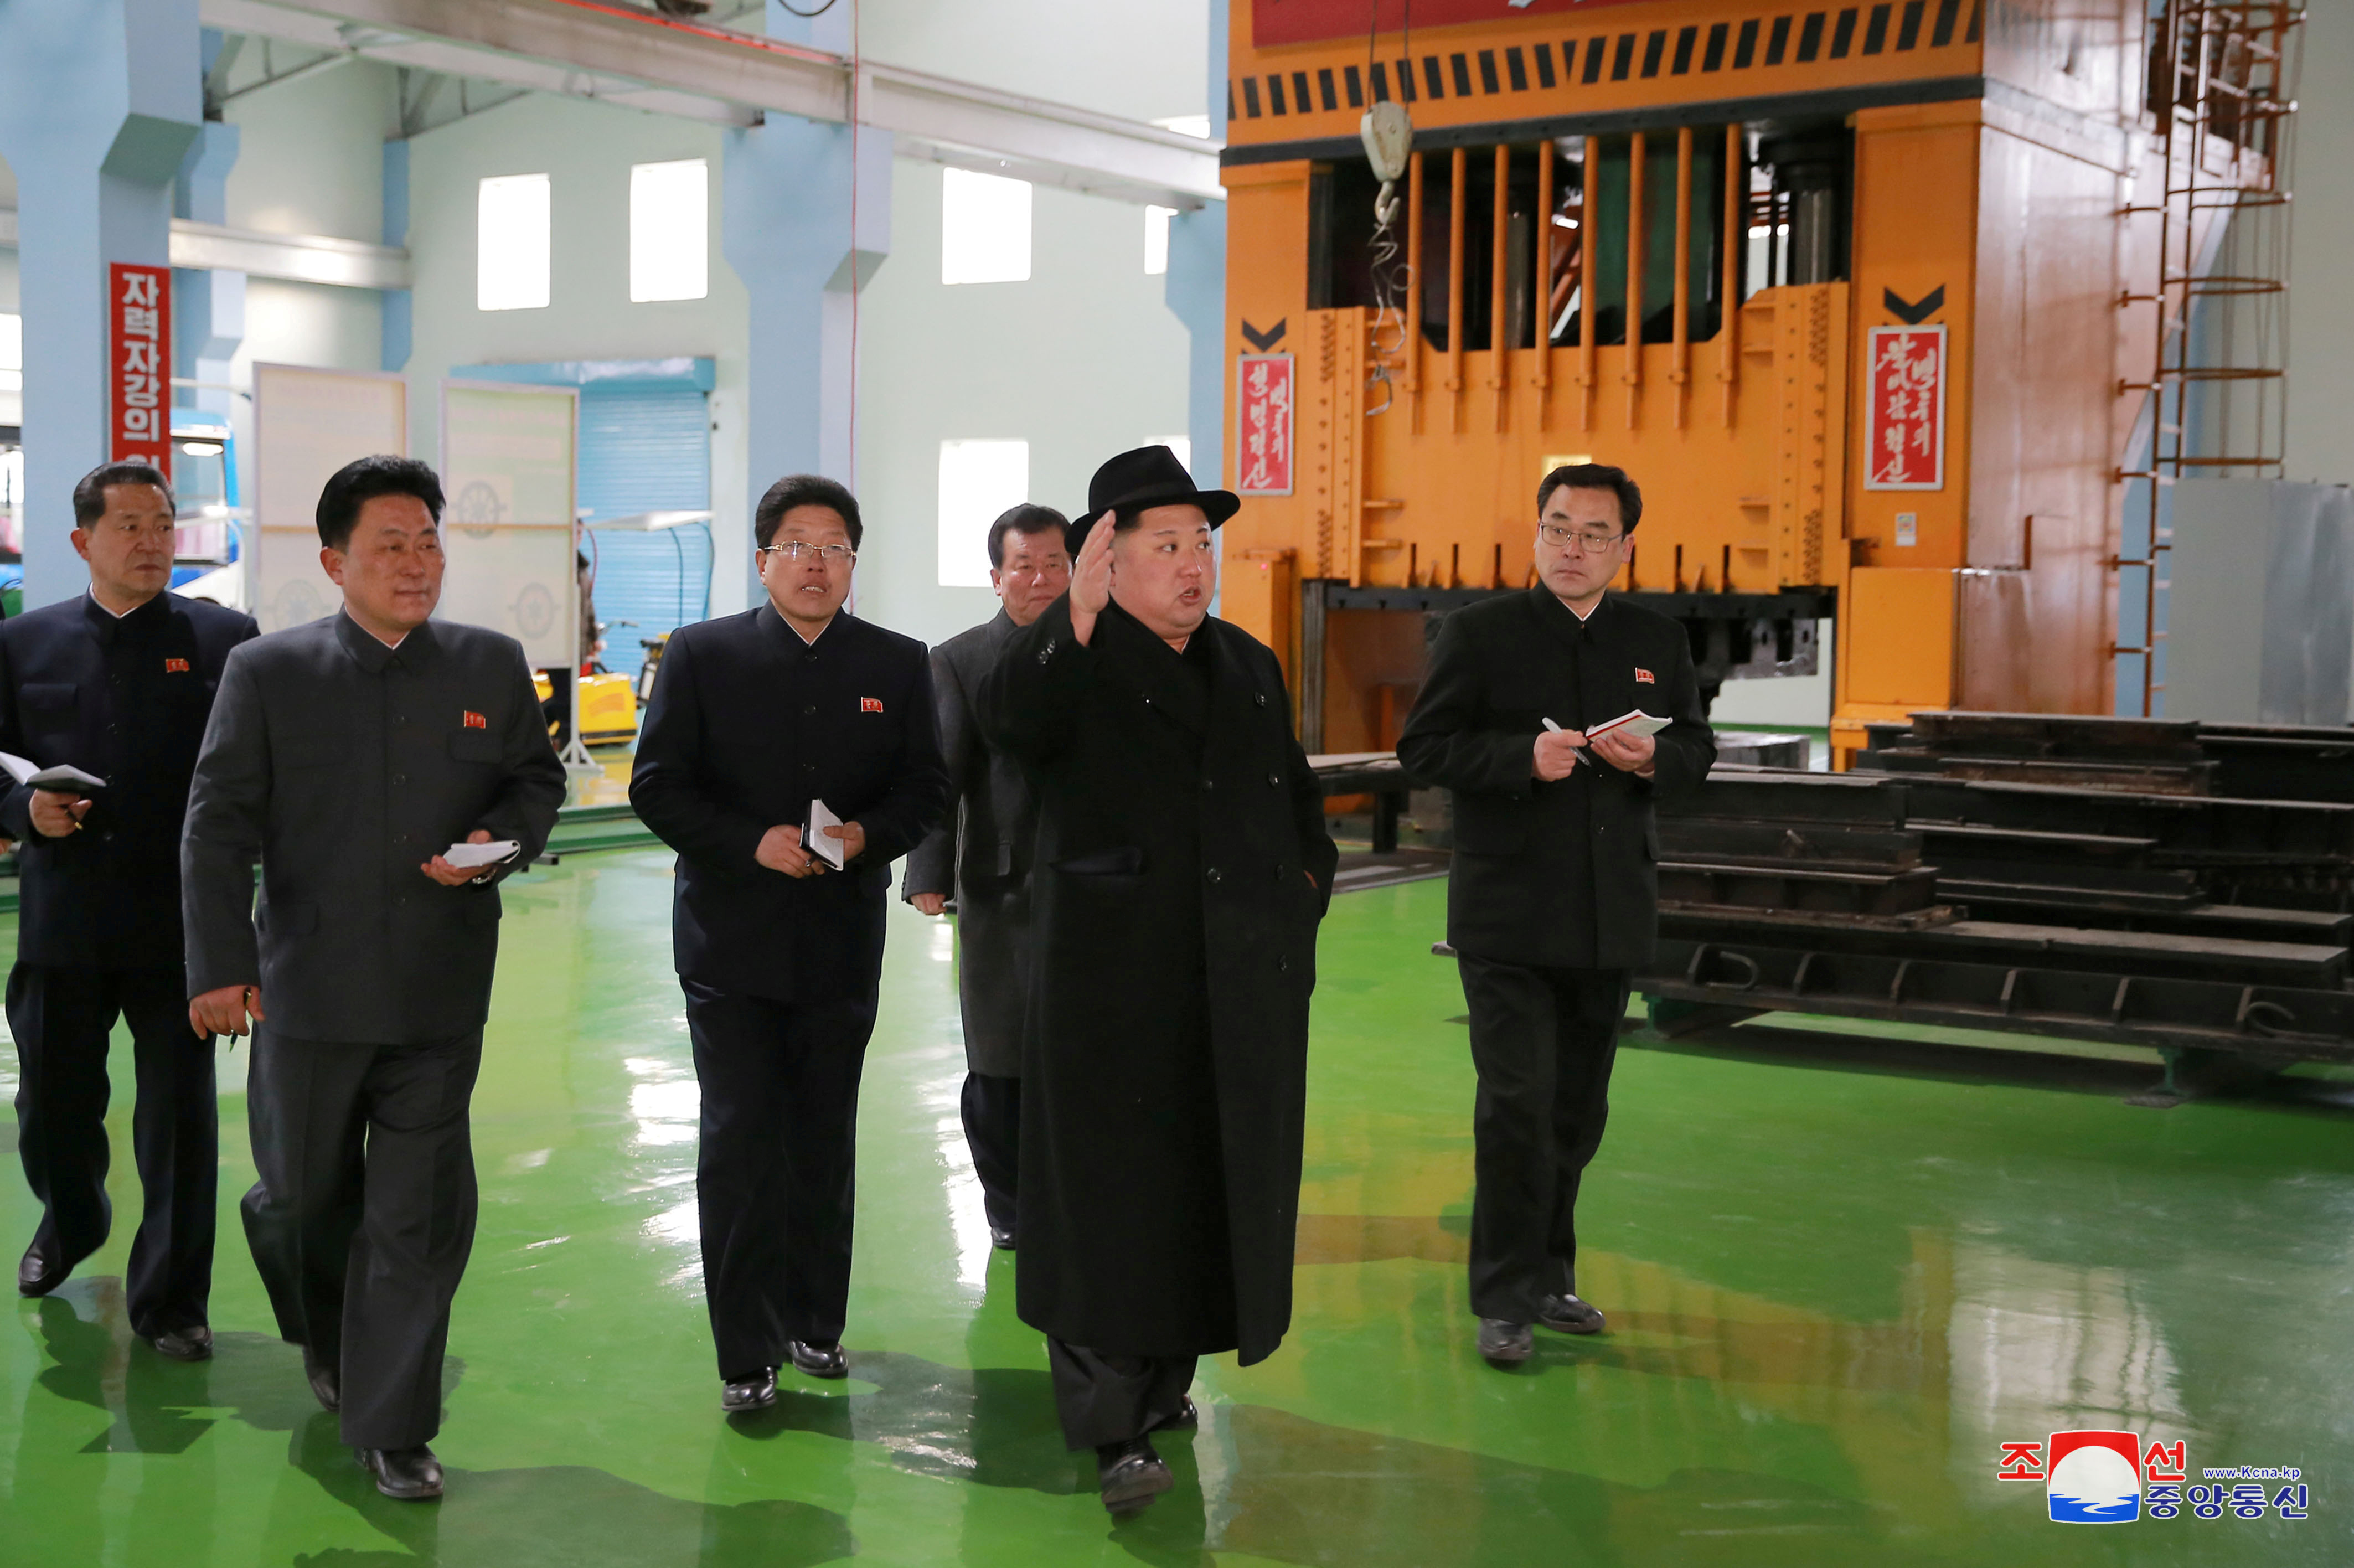 زعيم كوريا الشمالية يتفقد مصنع حافلات